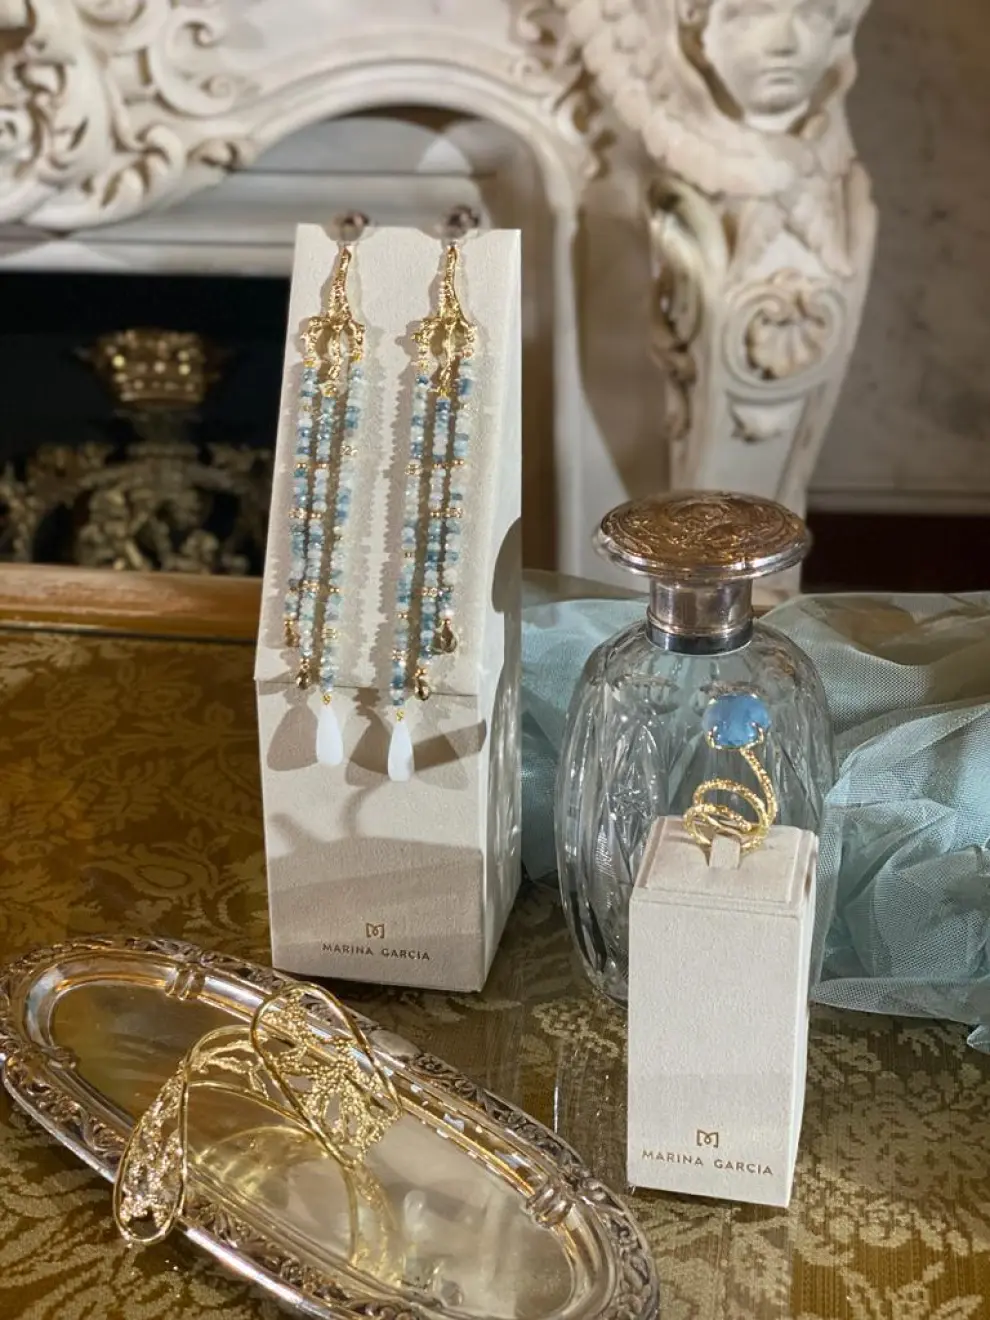 Las joyas de la diseñadora aragonesa Marina García han deslumbrado en la Semana de la Moda de Madrid
 Se trata de la única empresa de joyería que ha participado en la 7ª edición de Atelier Couture donde presentaba, en exclusiva, su colección de joyas nupciales.